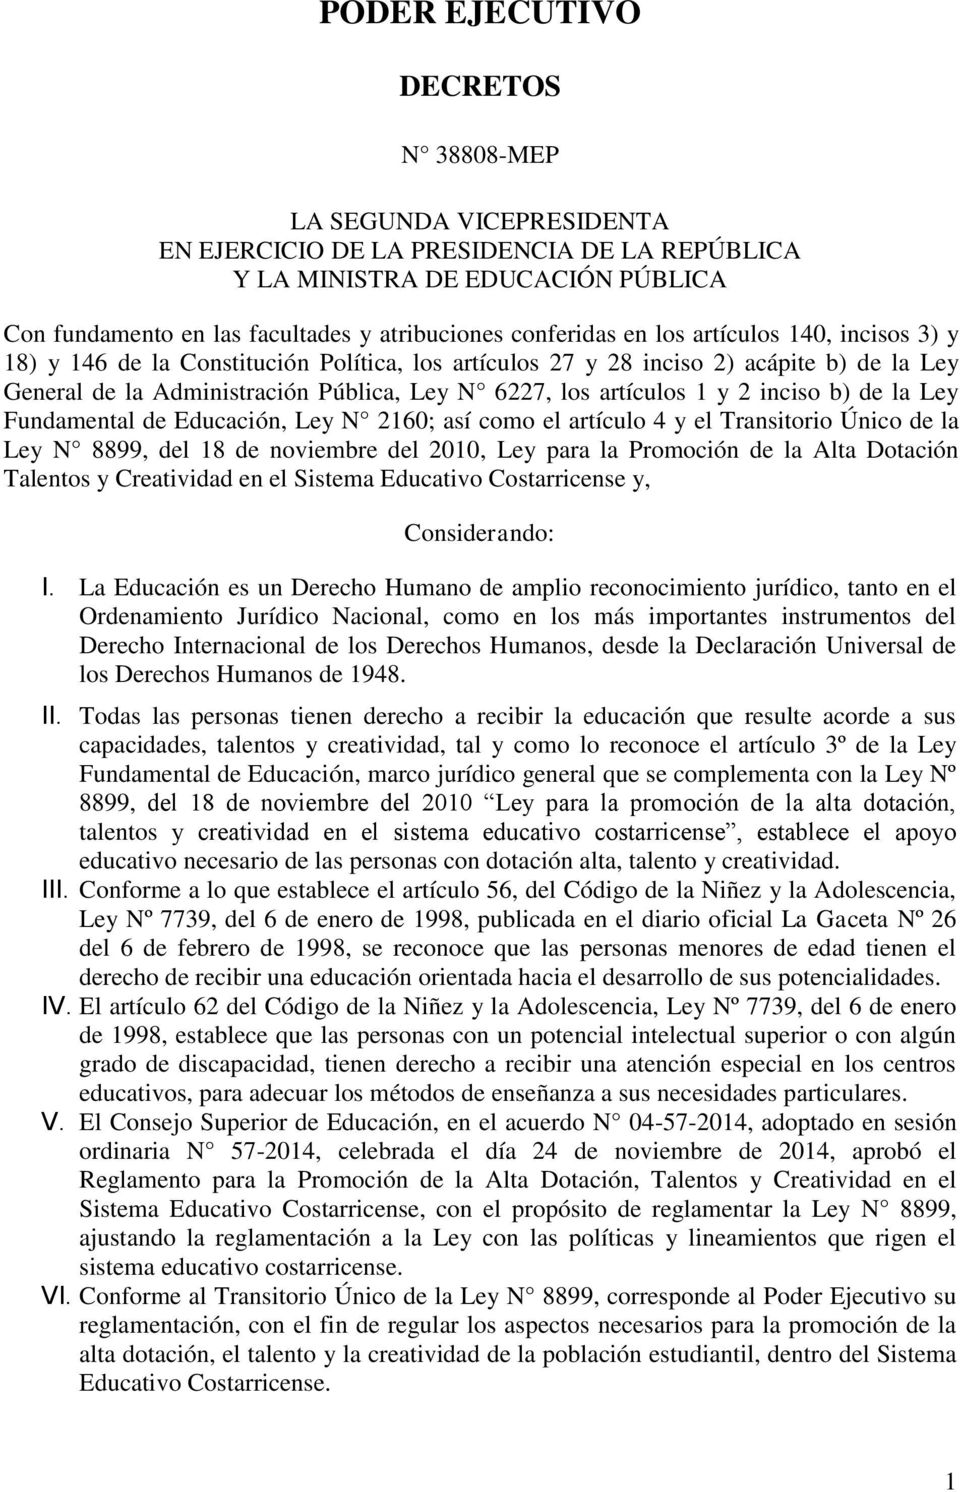 artículos 1 y 2 inciso b) de la Ley Fundamental de Educación, Ley N 2160; así como el artículo 4 y el Transitorio Único de la Ley N 8899, del 18 de noviembre del 2010, Ley para la Promoción de la